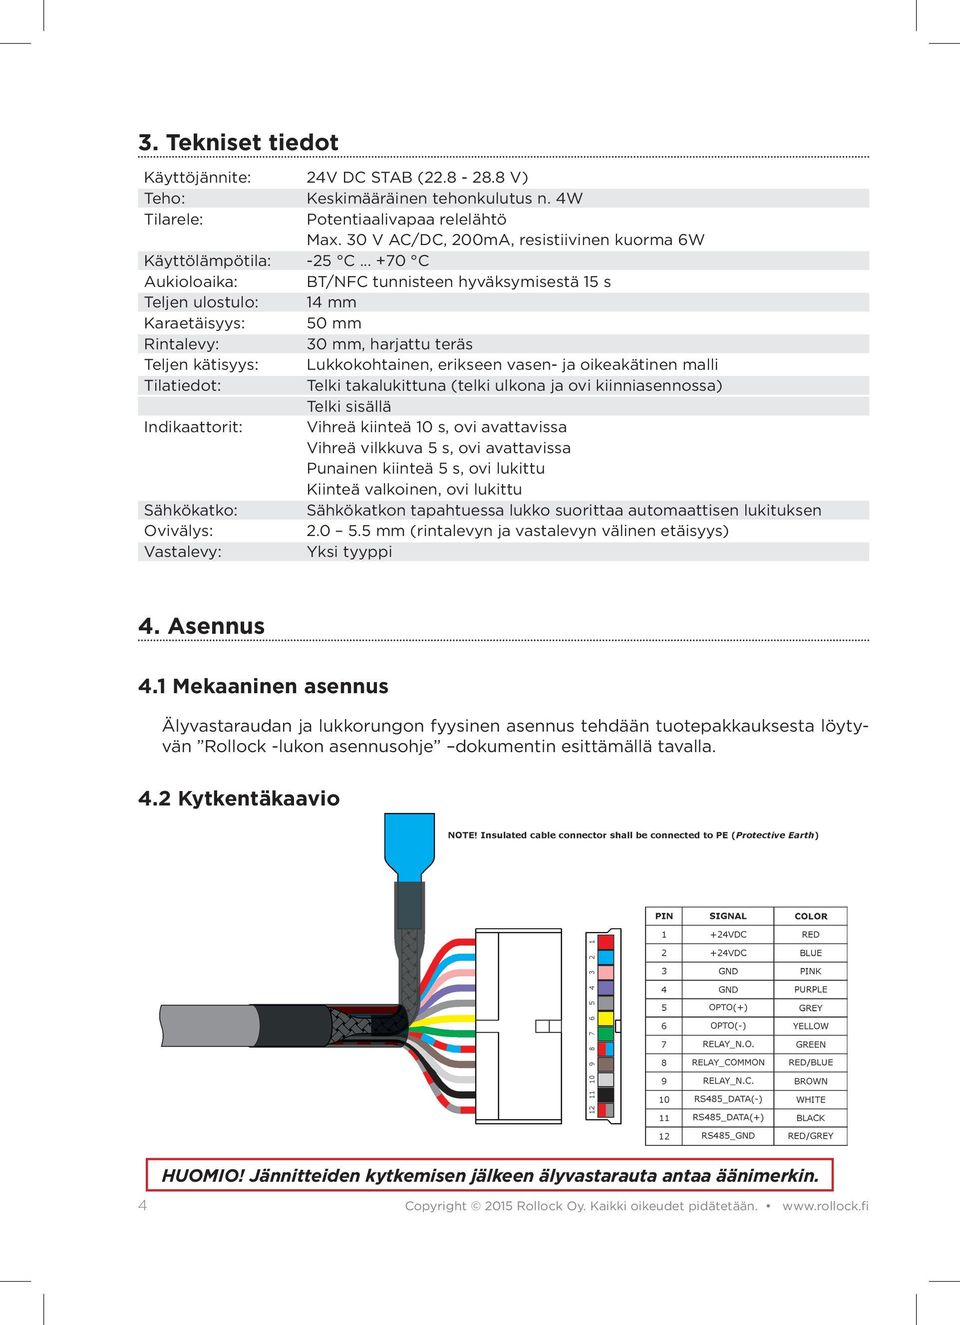 .. +70 C Aukioloaika: BT/NFC tunnisteen hyväksymisestä 15 s Teljen ulostulo: 14 mm Karaetäisyys: 50 mm Rintalevy: 30 mm, harjattu teräs Teljen kätisyys: Lukkokohtainen, erikseen vasen- ja